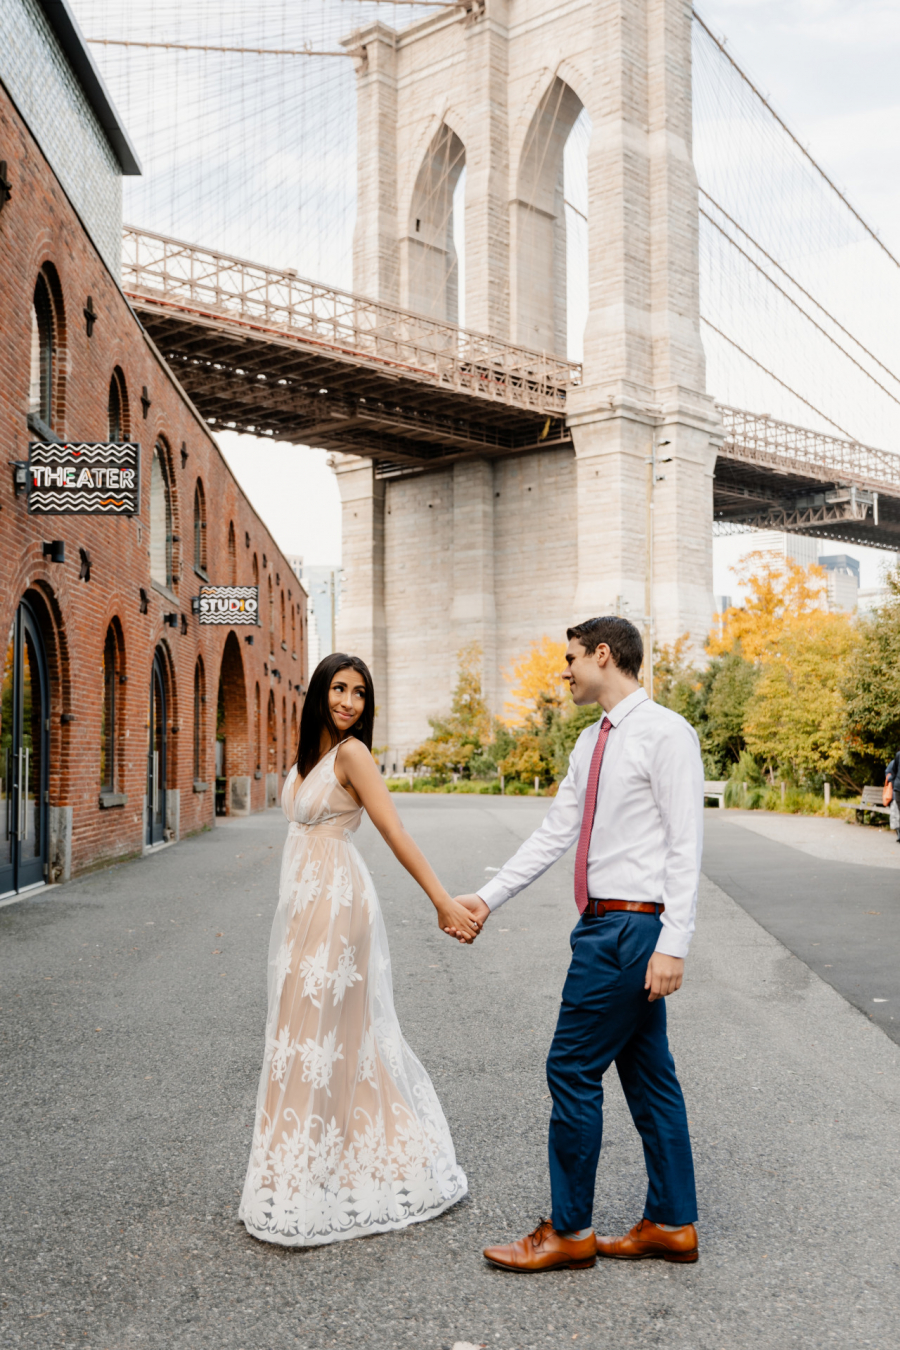 Engagement Photoshoot in Dumbo New York 7